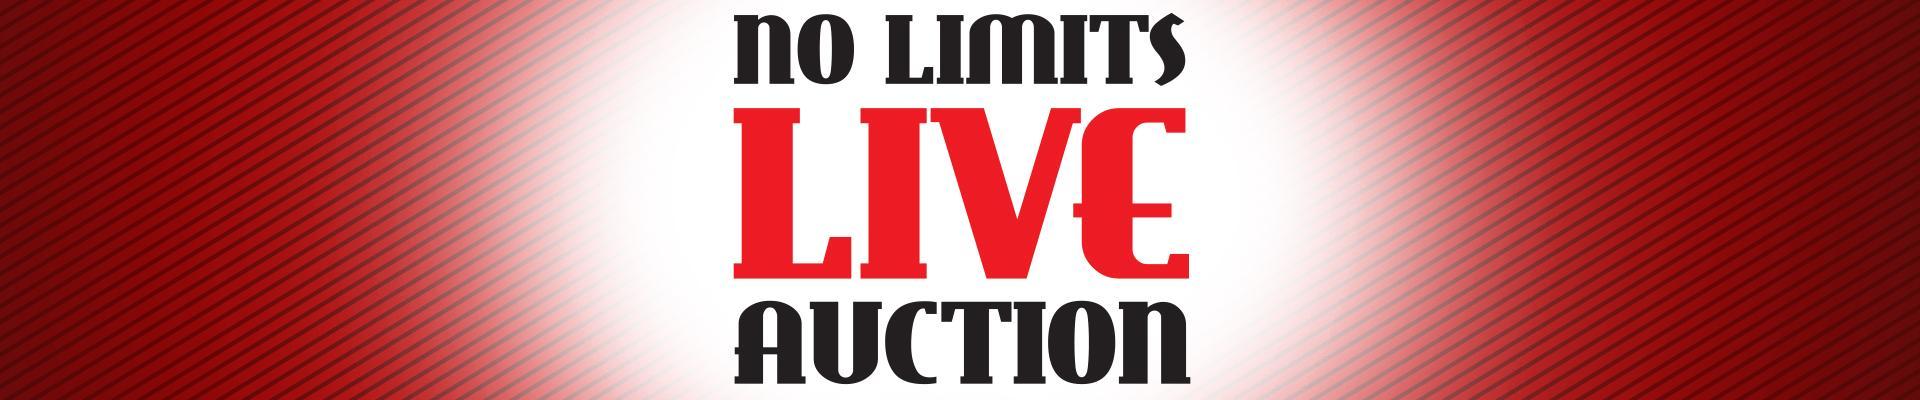 No Limits Live Auction Header